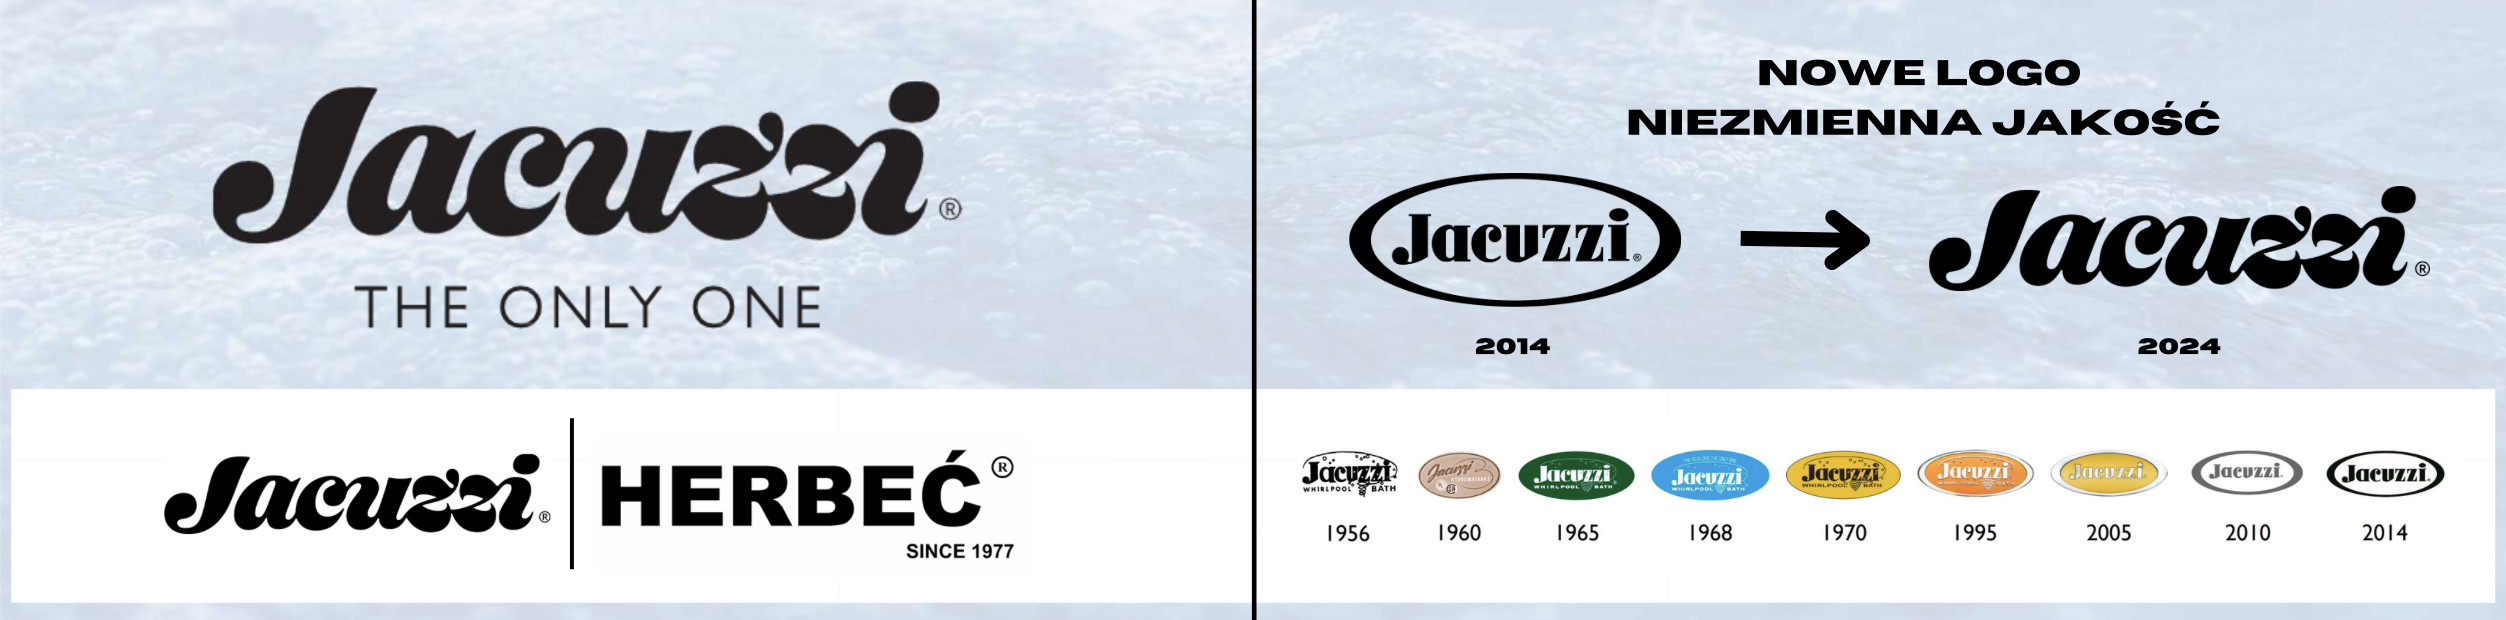 Nowe Logo Jacuzzi® HERBEC Polska jacuzzi logo 2024